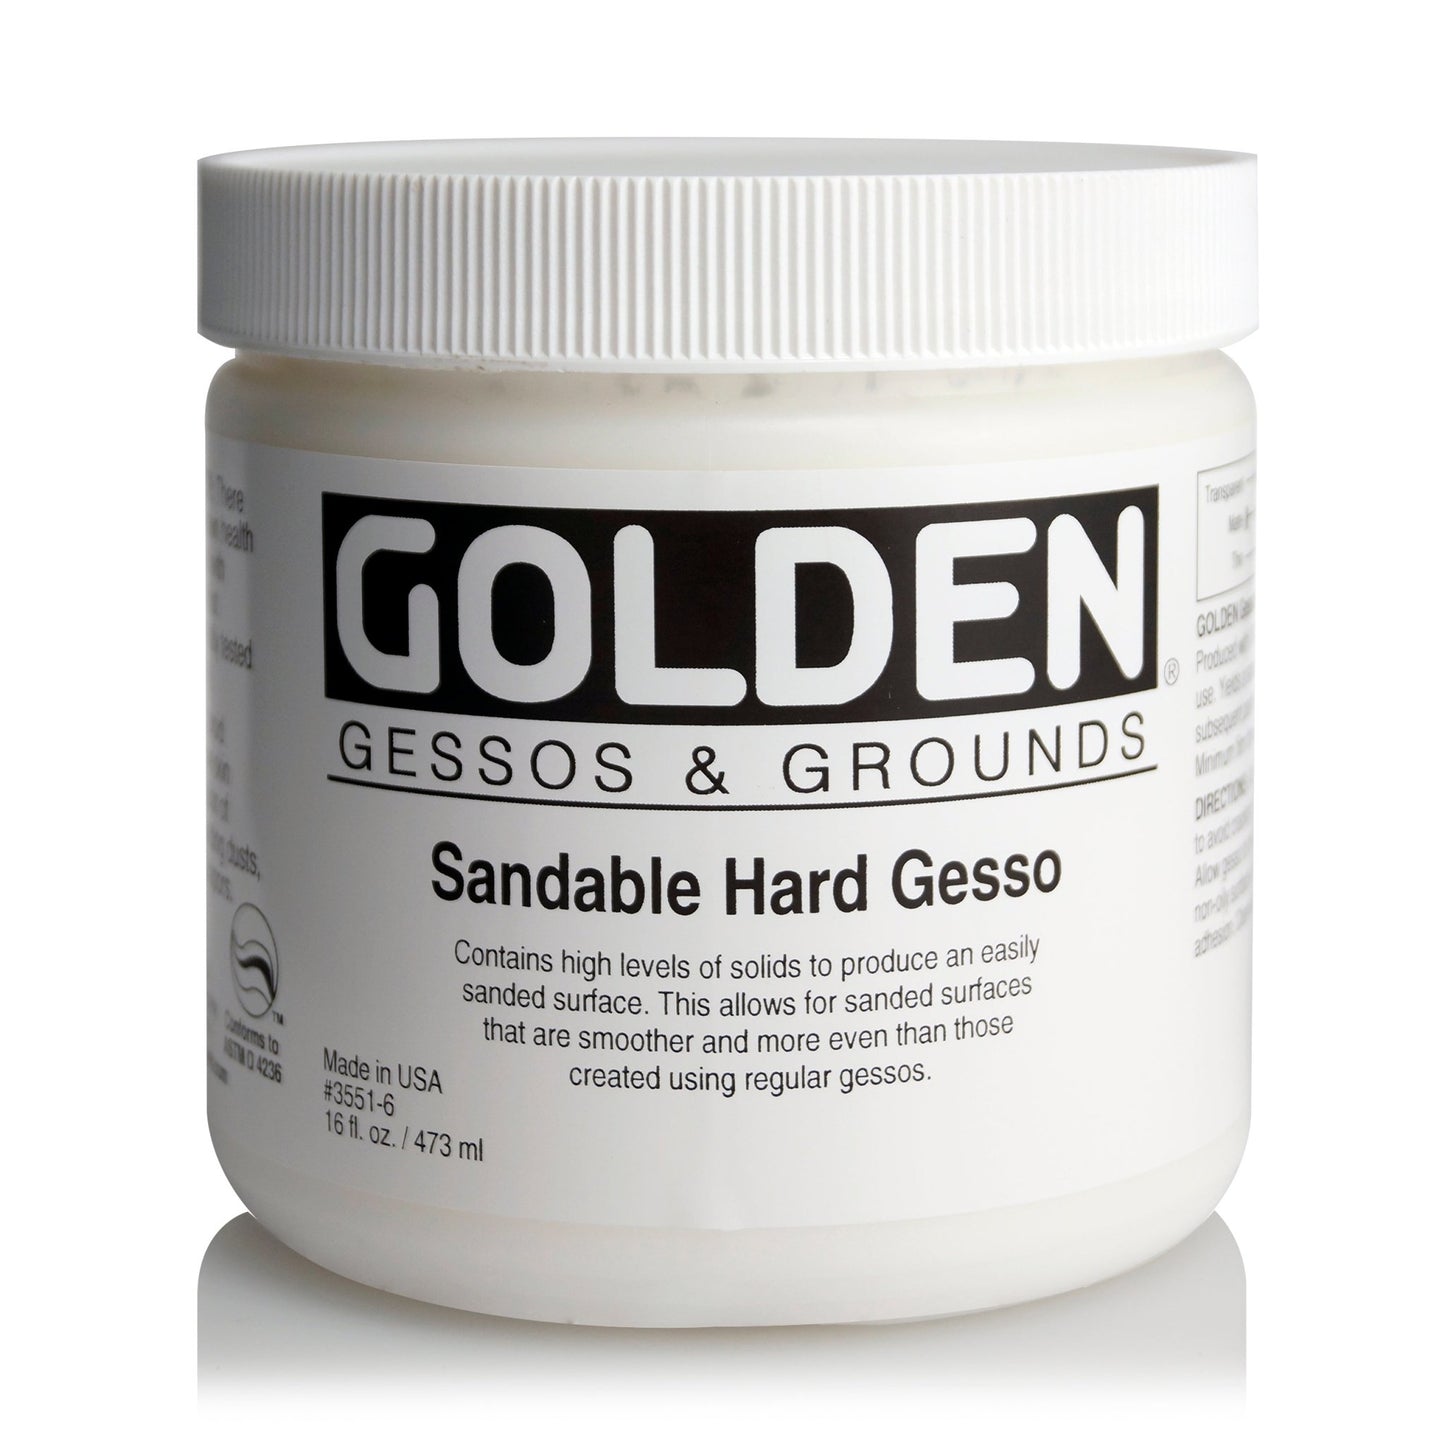 Golden Sandable Hard Gesso 473ml - theartshop.com.au